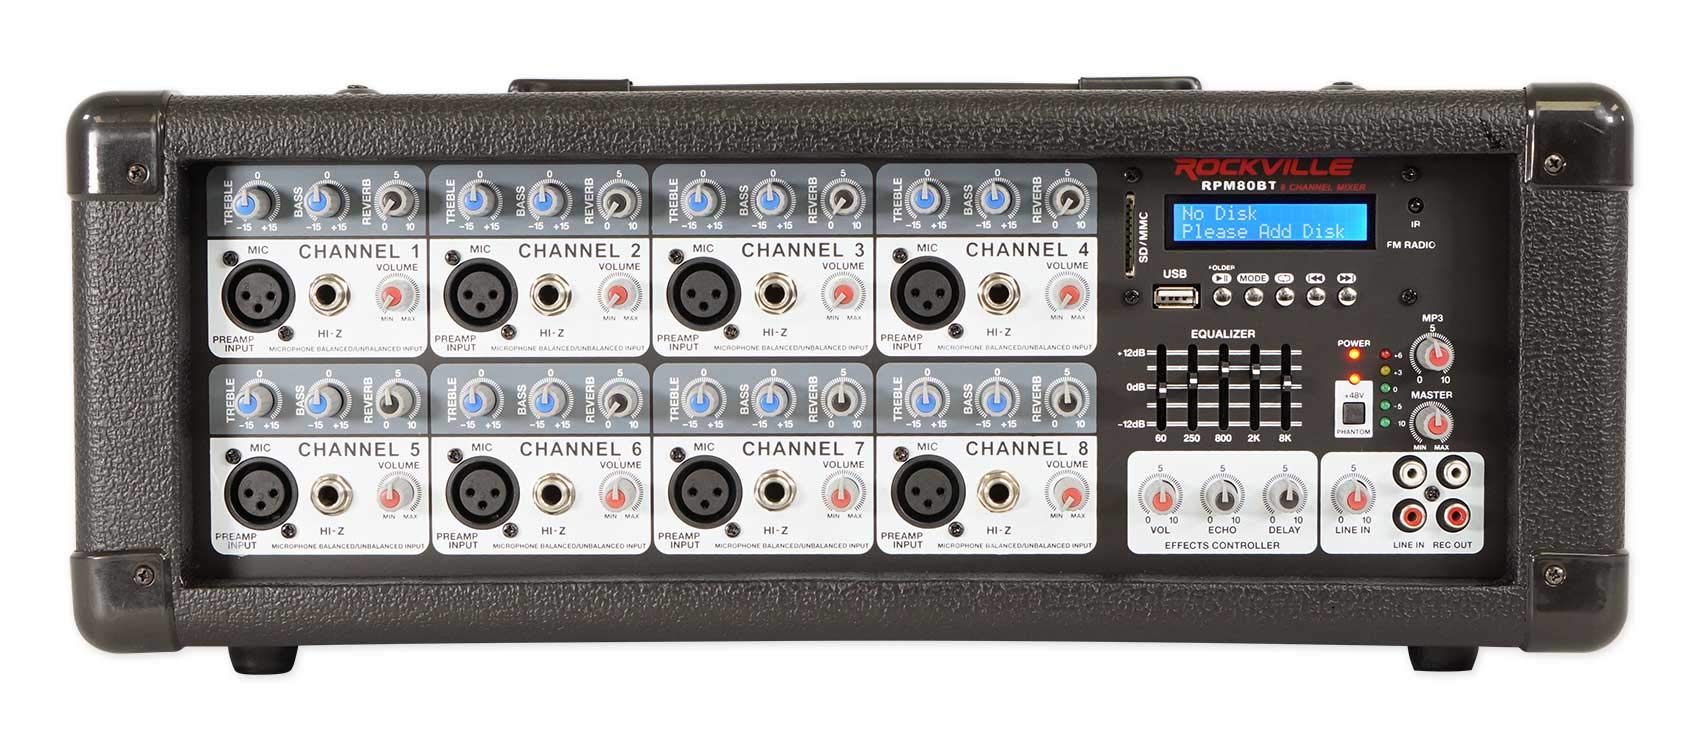 Rockville Mixer/amplificador de 8 canais alimentado por RPM80BT 2400w c/Bluetooth/EQ/efeitos